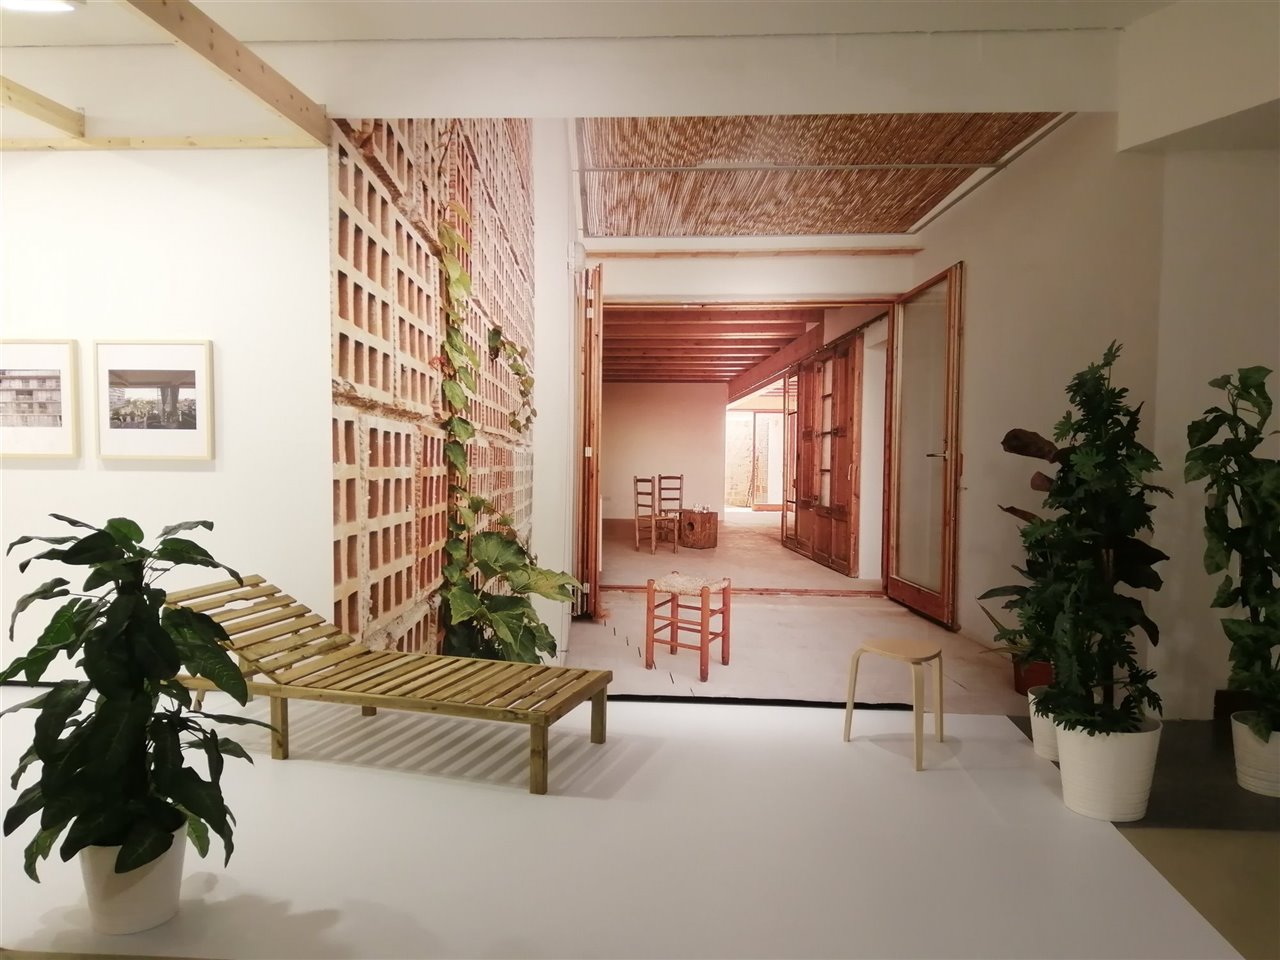 Reproducción a escala del interior de la vivienda Life Reusing Posidonia, uno de los ejemplos de la exposición. 